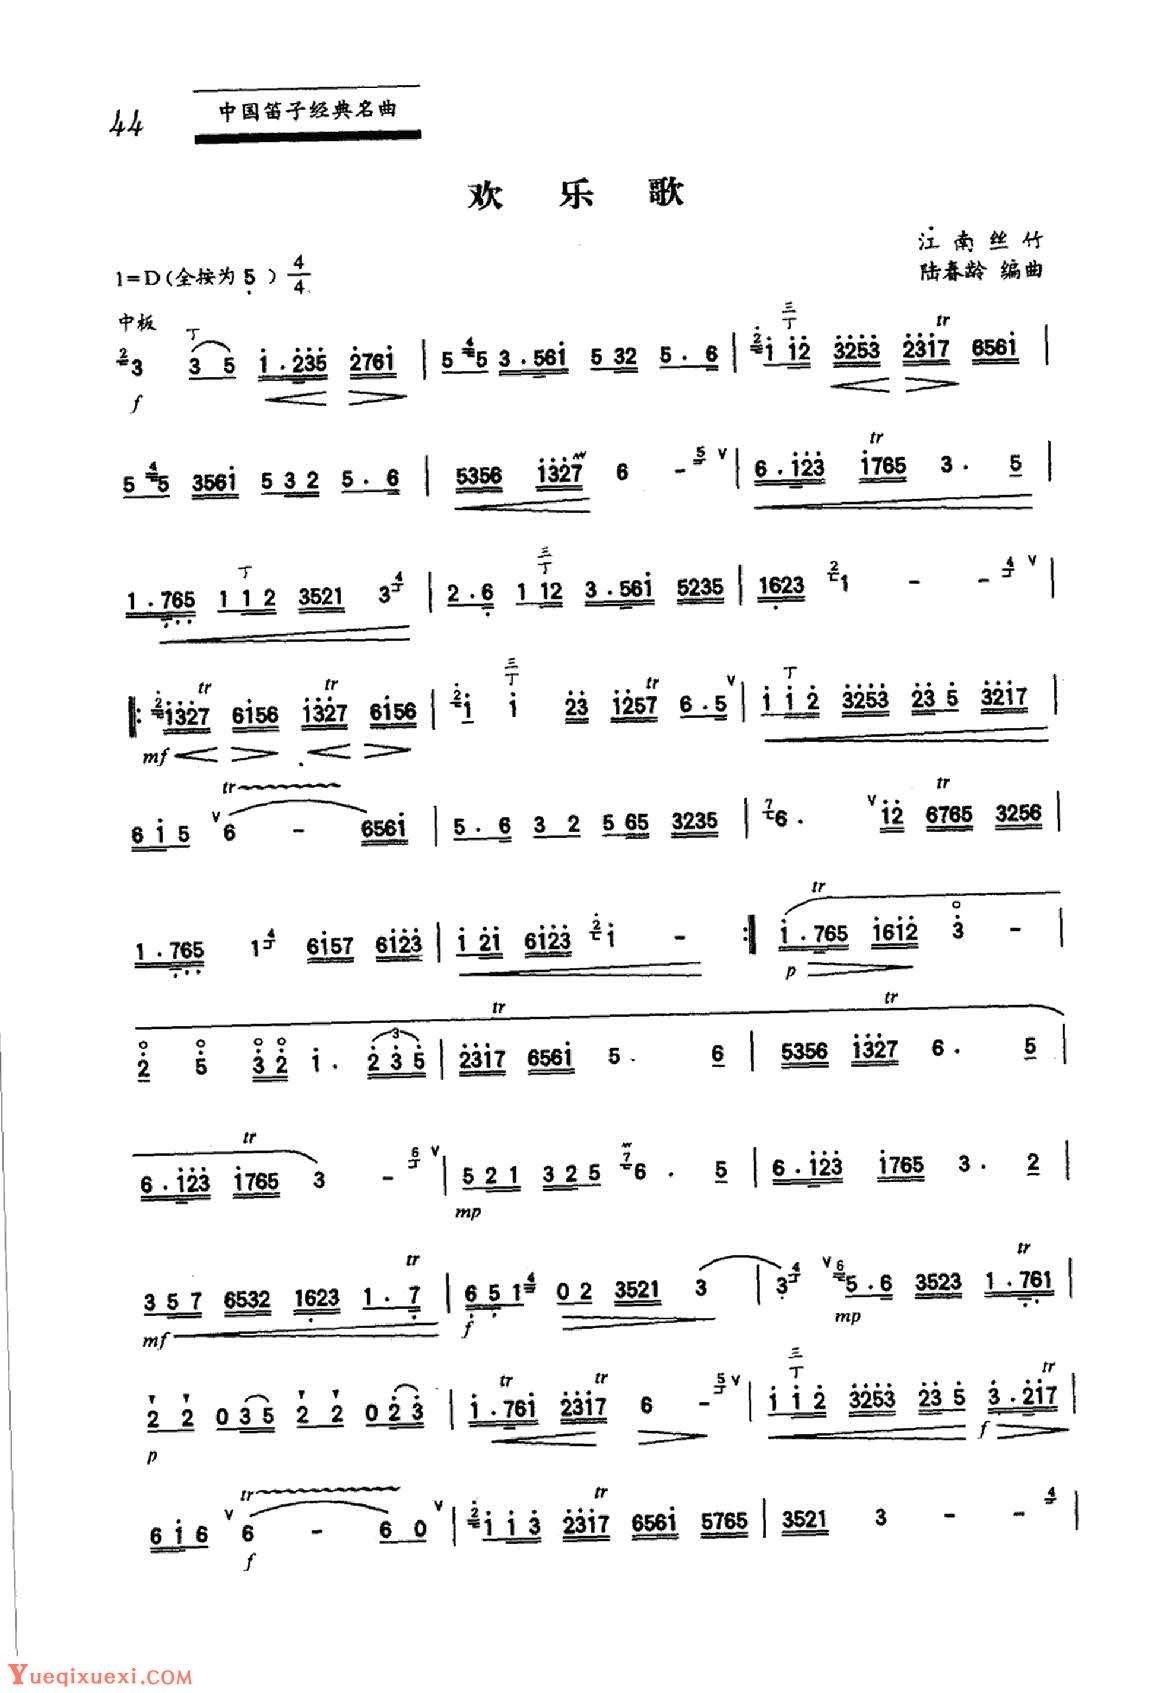 初级笛箫乐曲《绣荷包》简单的竹笛曲-笛子曲谱 - 乐器学习网